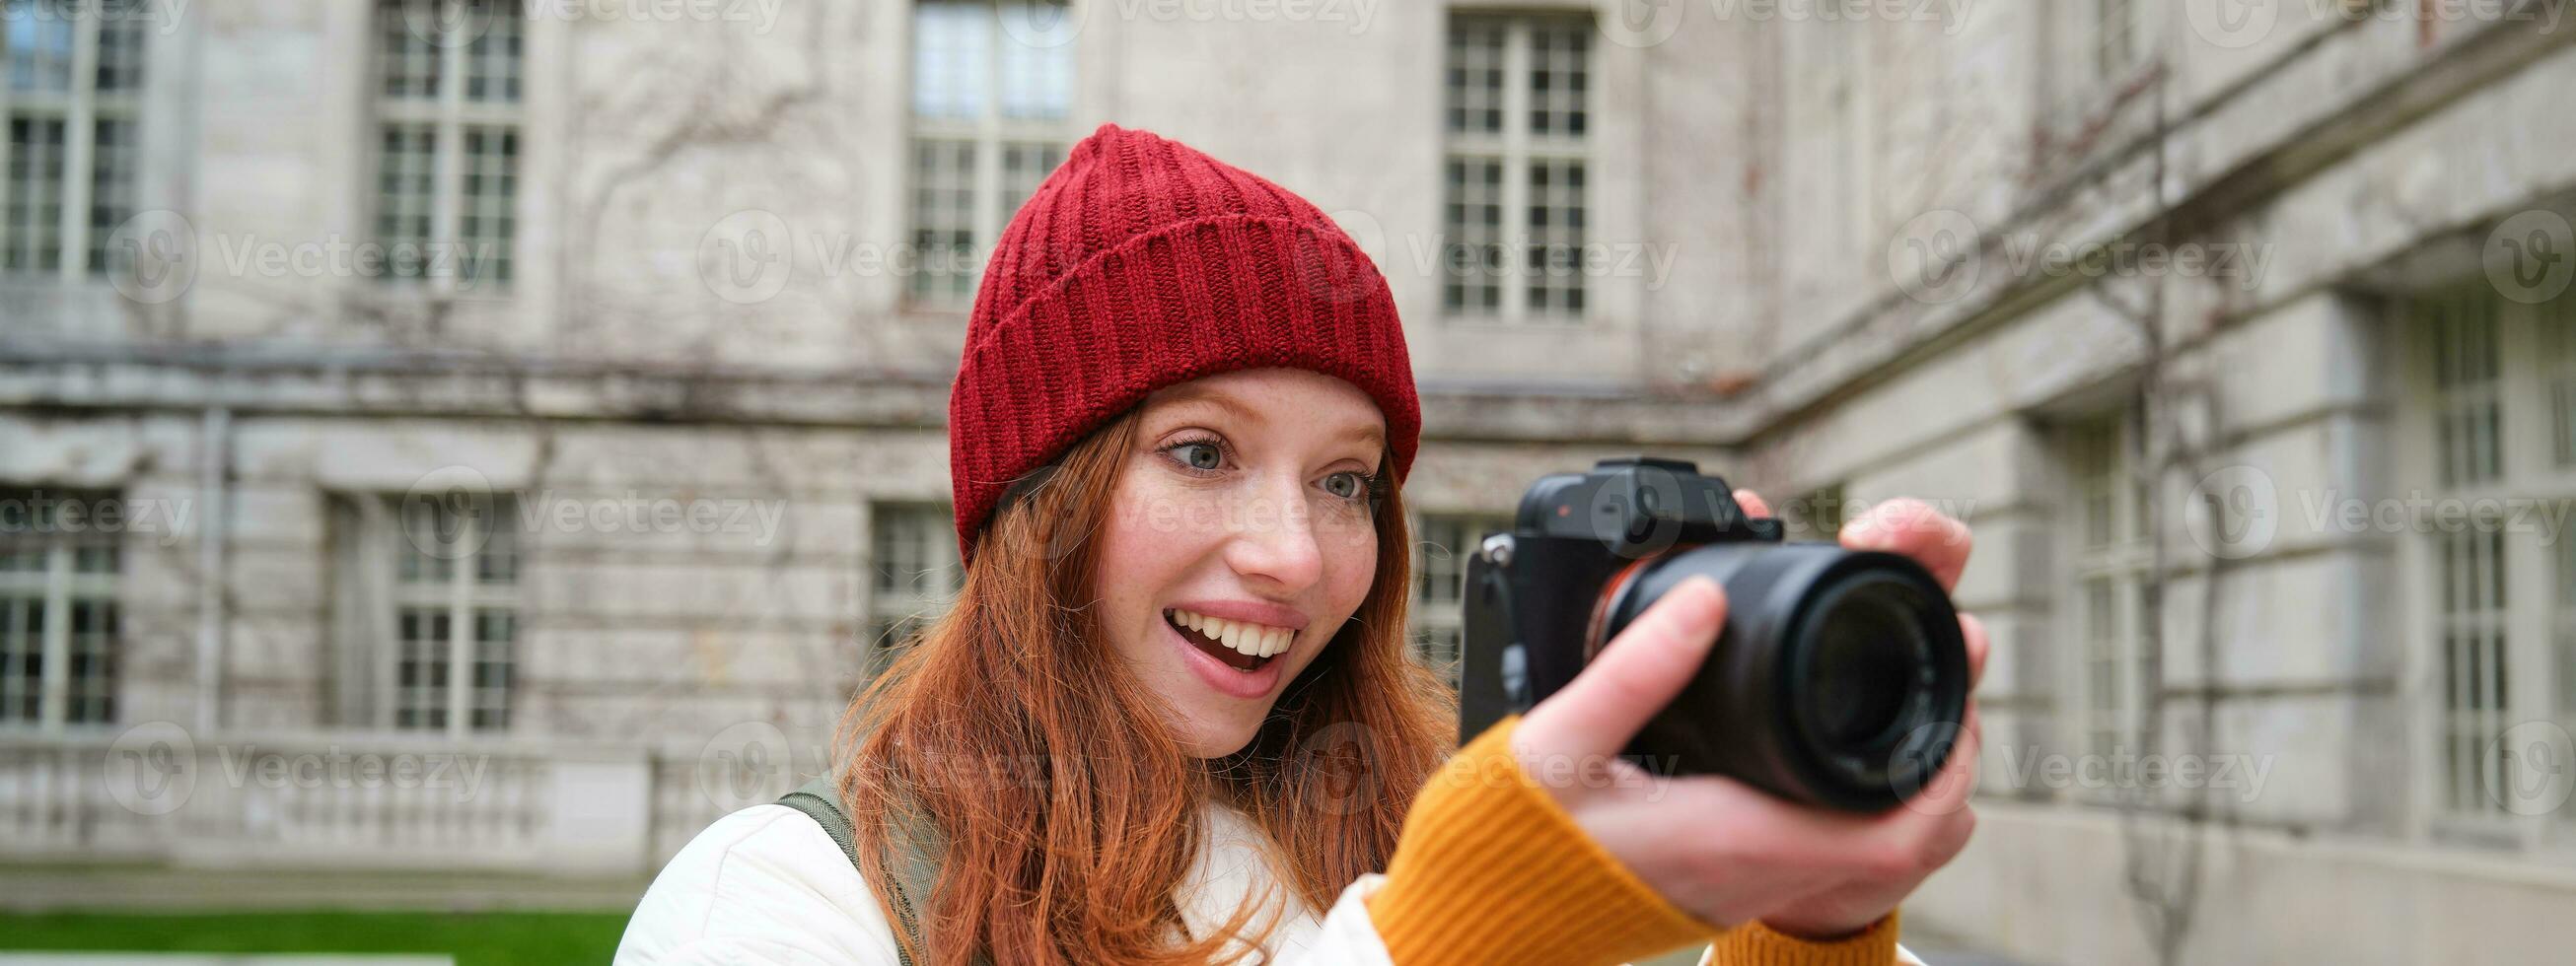 rödhårig flicka fotograf tar foton på professionell kamera utomhus, fångar gatustil skott, utseende upphetsad medan tar bilder